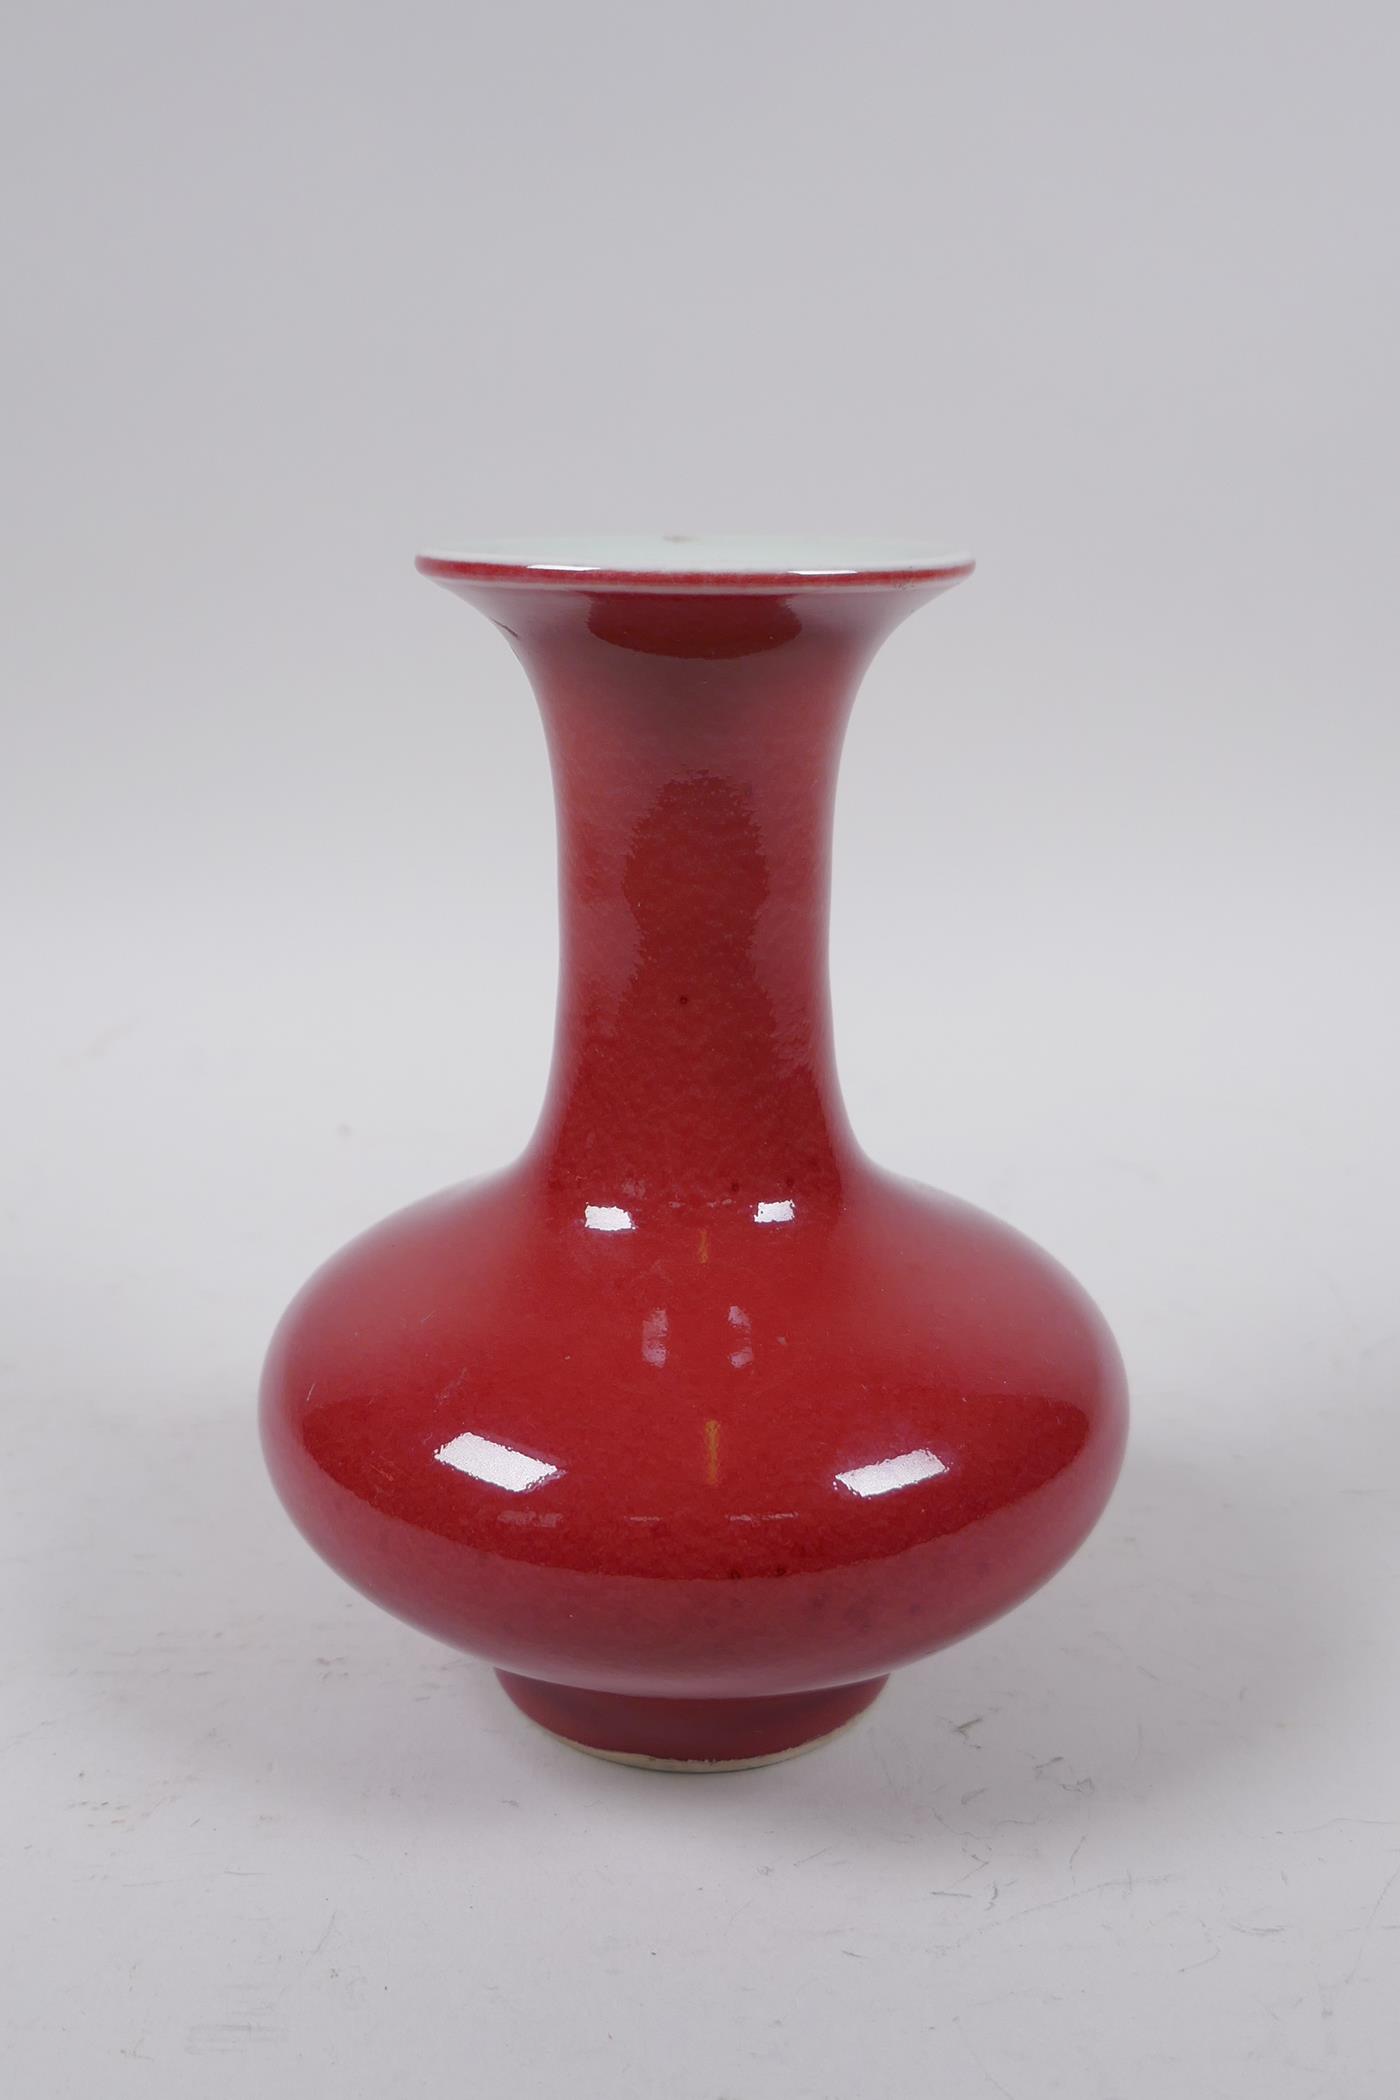 A Chinese sang de boeuf glazed porcelain vase, 14cm high